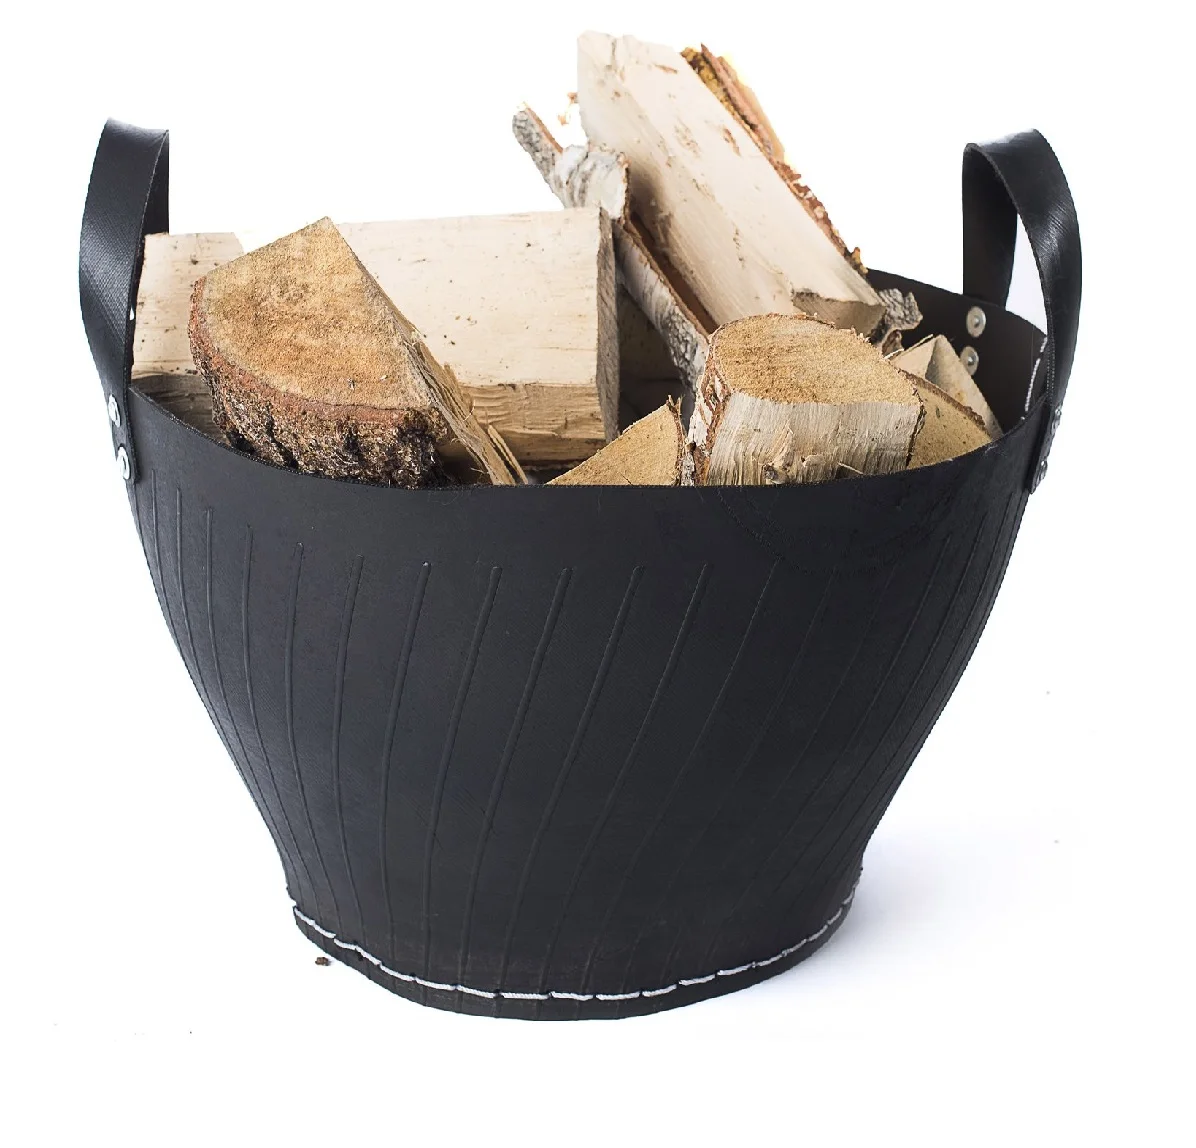 diámetro de 49 cm Cesta de madera de leña para almacenamiento de troncos de caucho reciclado con anillo de acero inoxidable 